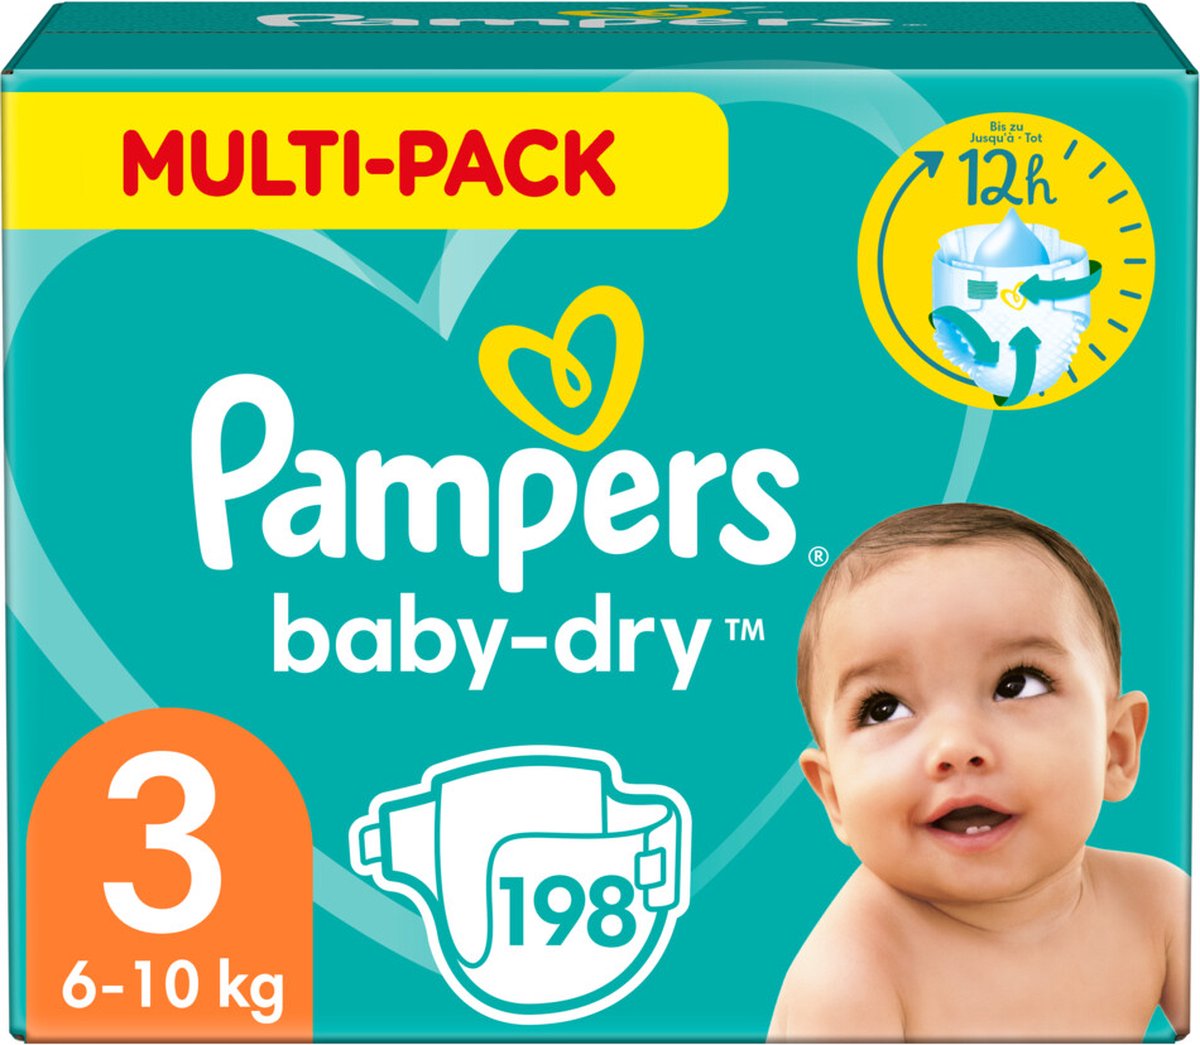 Boer trainer schudden Pampers Baby-Dry Luiers - Maat 3 (6-10 kg) - 198 stuks - Multi-Pack |  bol.com